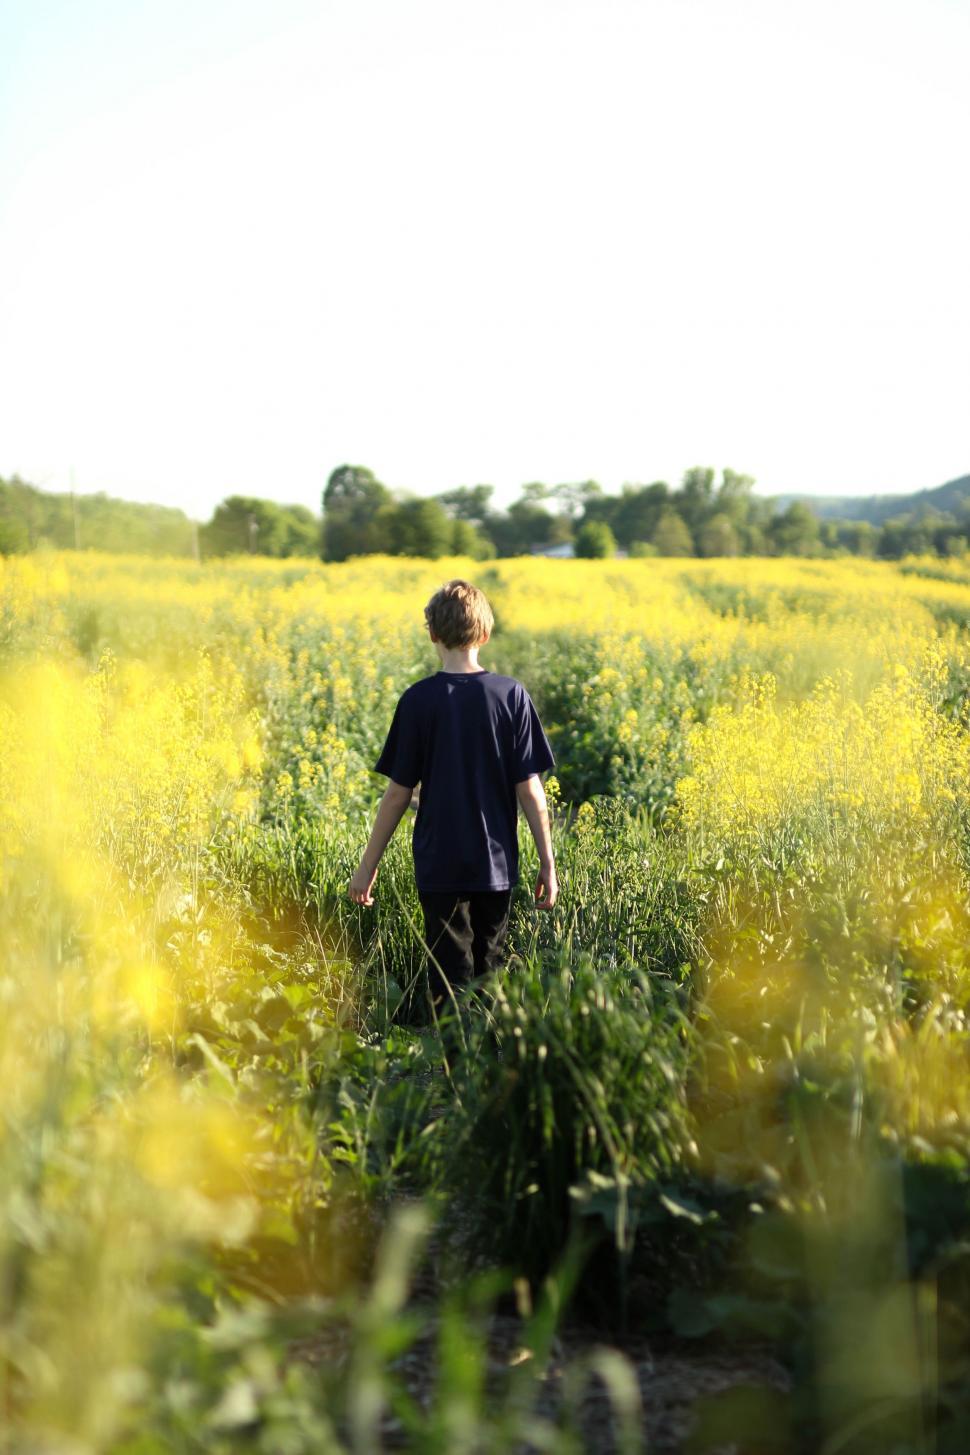 Free Image of Boy in sunflower field  